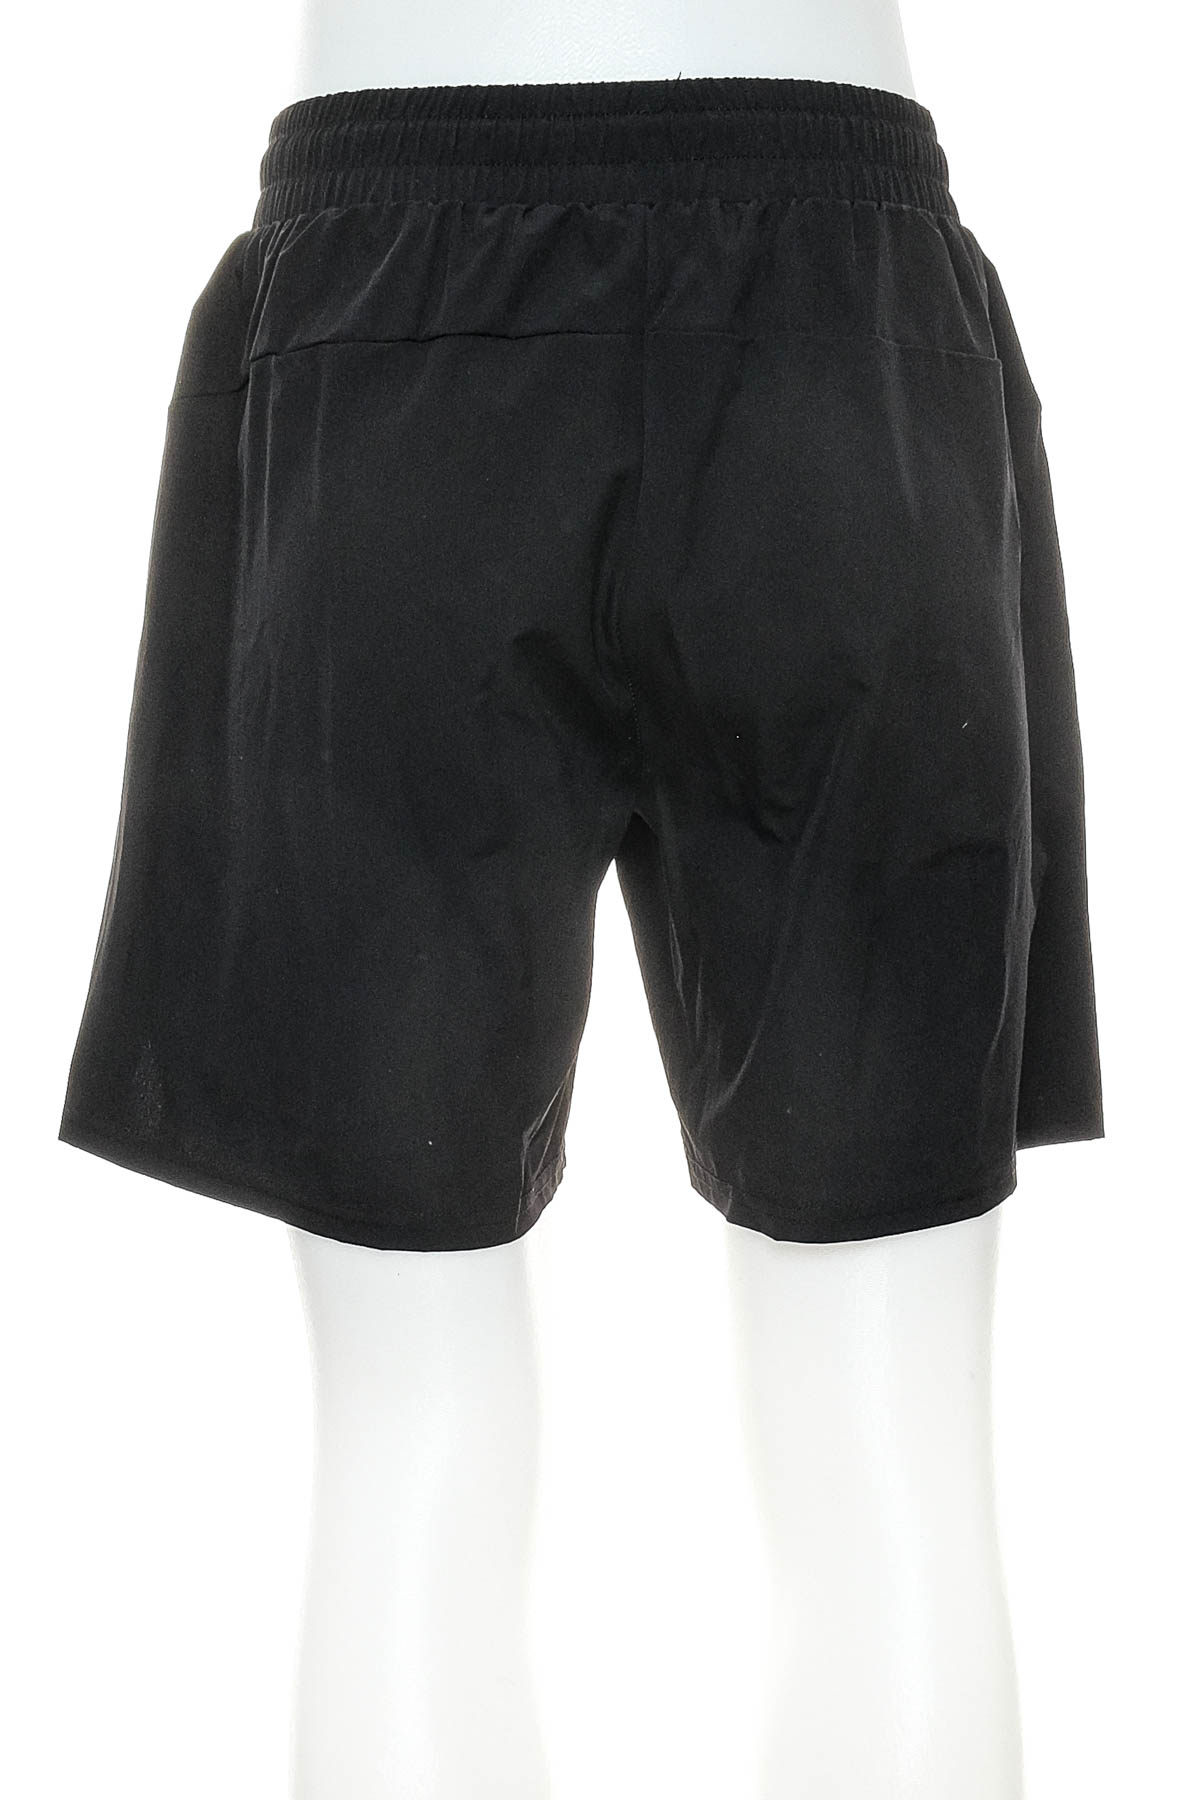 Men's shorts - PANTHER - 1